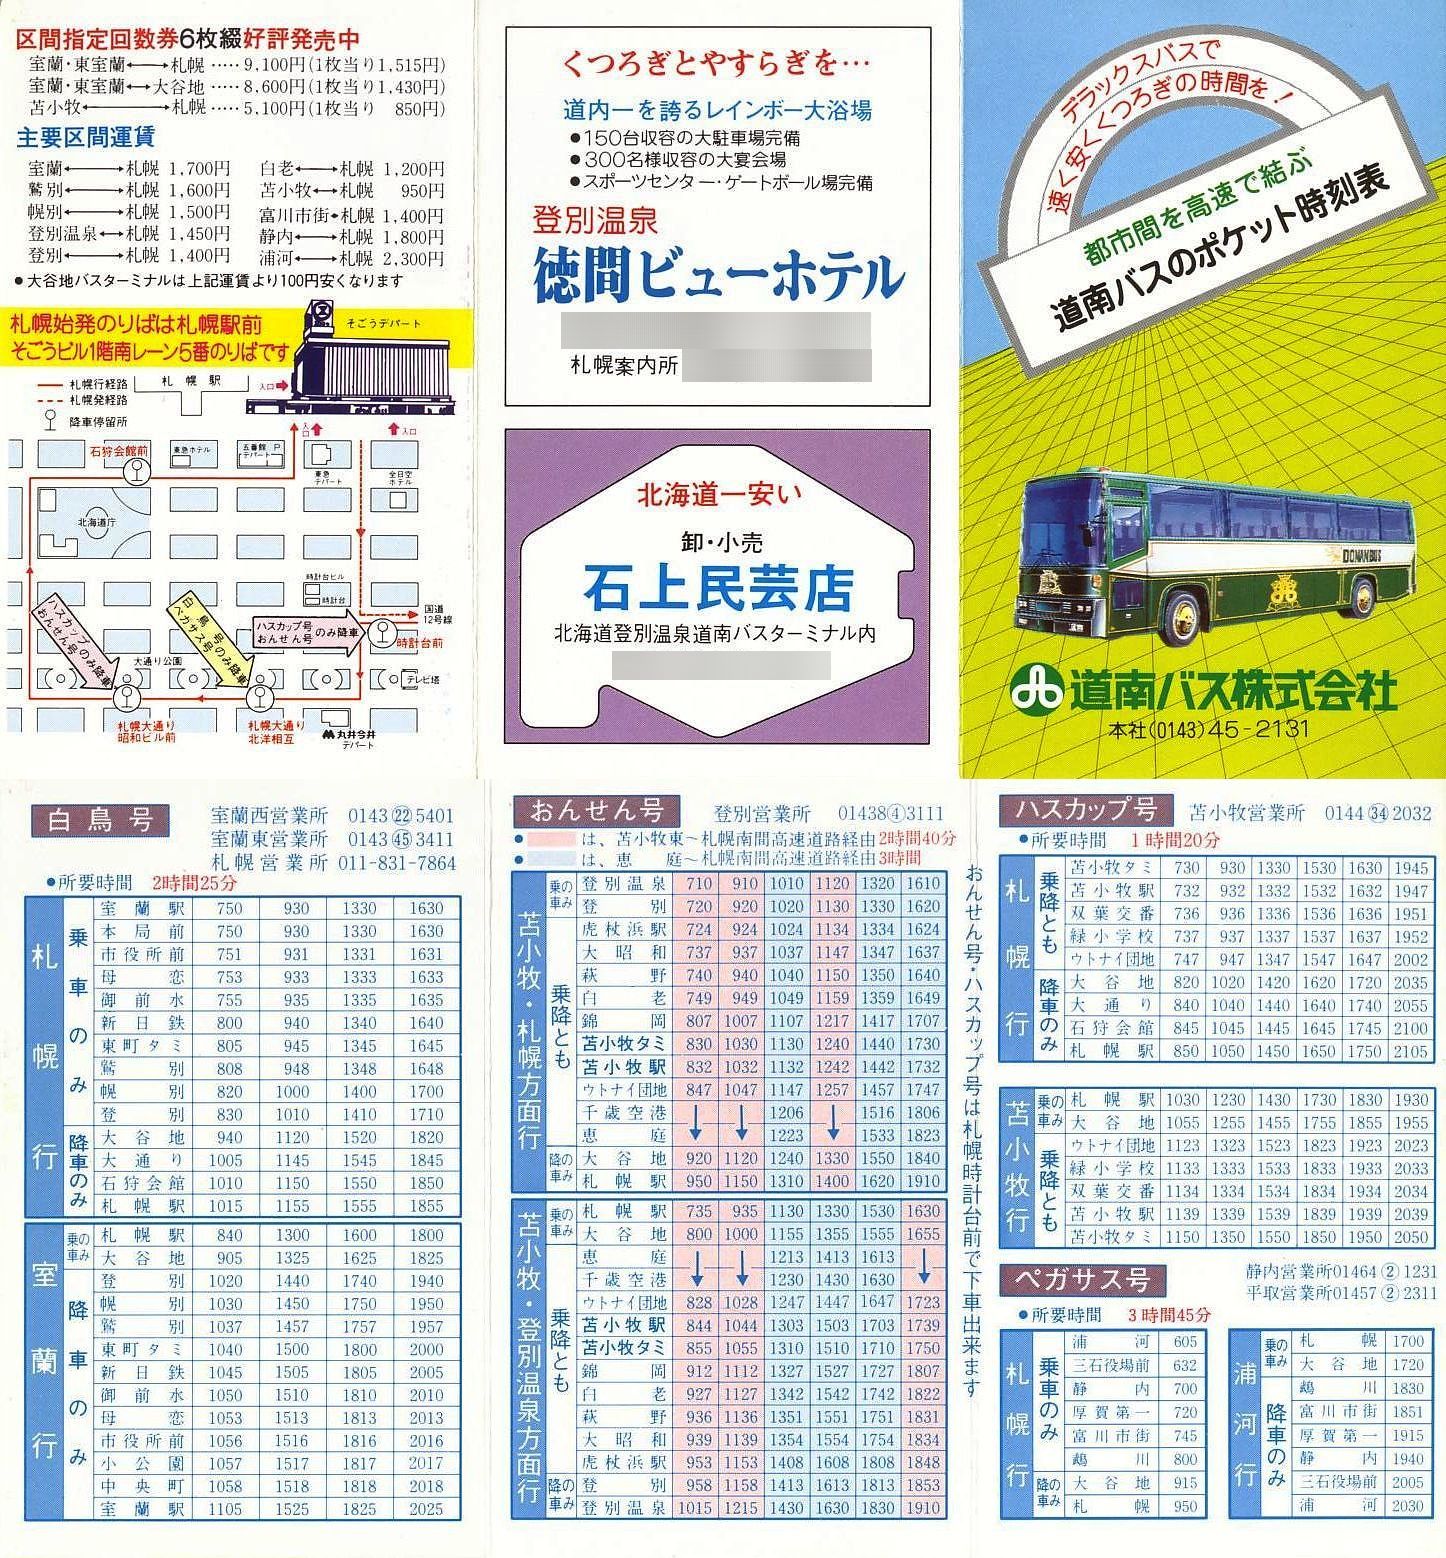 1985-04-01改正_道南バス_ポケット時刻表２